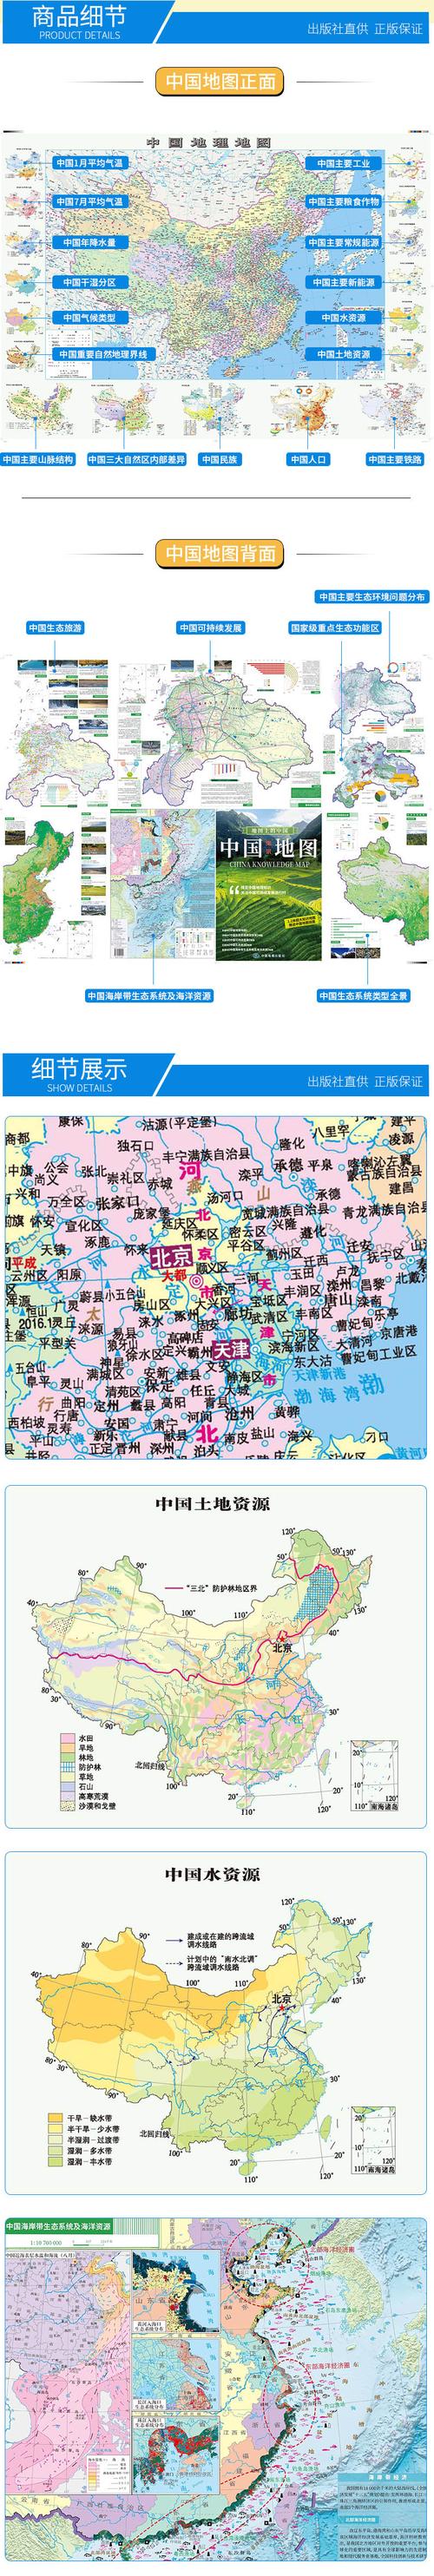 地图上的中国中国知识地图117米083米地图上的中国中国知识地图